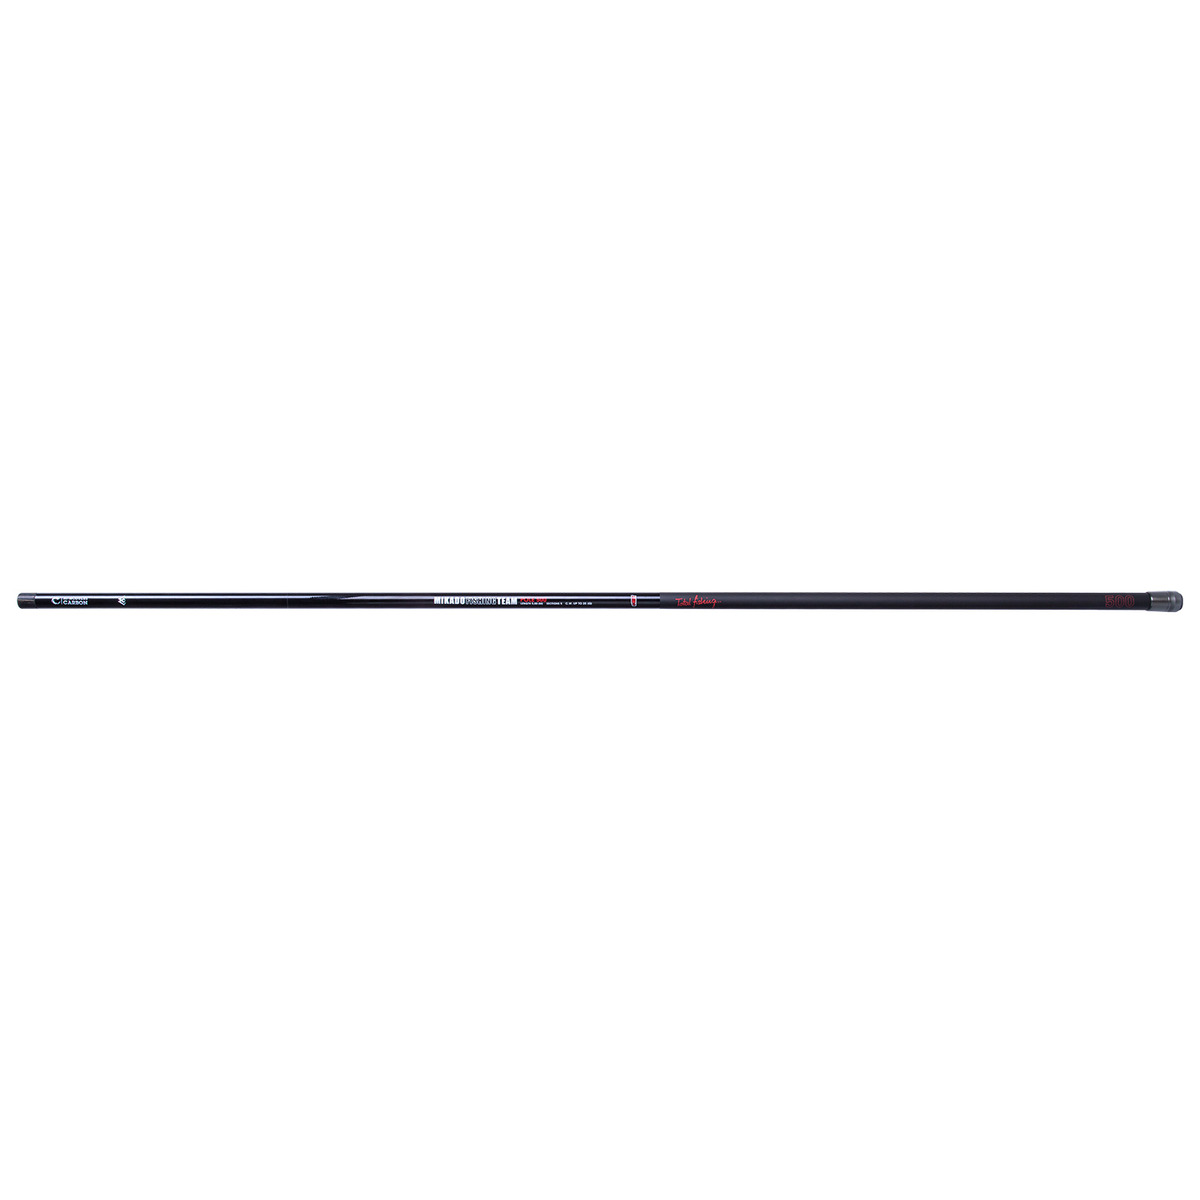 Mikado Mft Pole - 800 cm. cw up to 25g (8 sec.)